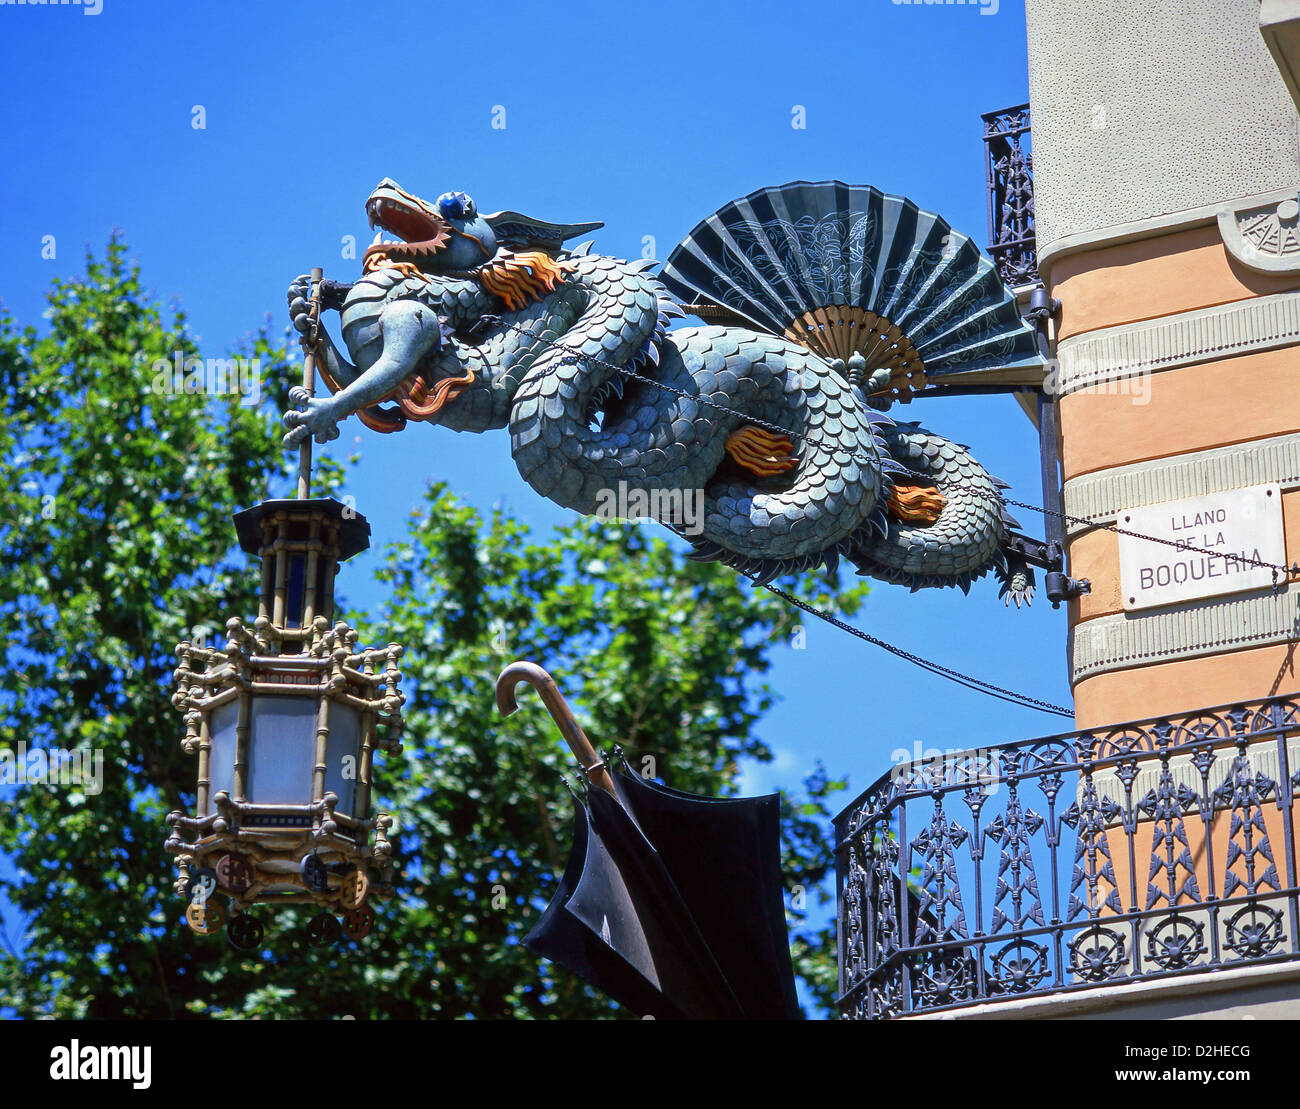 Chinese restaurant dragon lamp, Llano de La Boqueria, Barcelona, Province of Barcelona, Catalonia, Spain Stock Photo